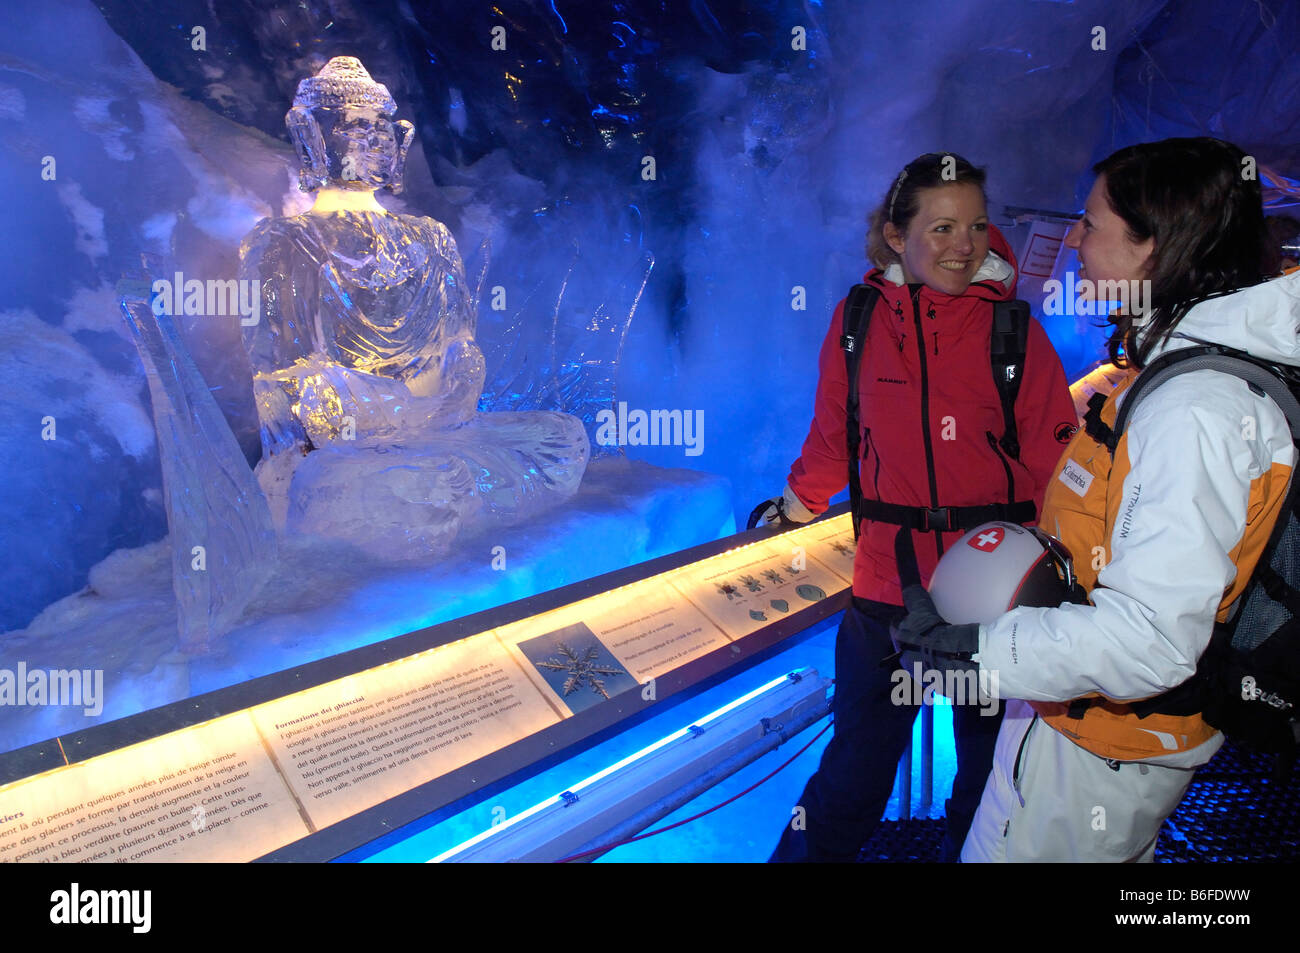 Eis-Buddha-Statue von Touristen in der Eishöhle im Gletscherpalast oder Gletscher-Palast, Klein Matterhorn Berg, Zerm bewundert Stockfoto